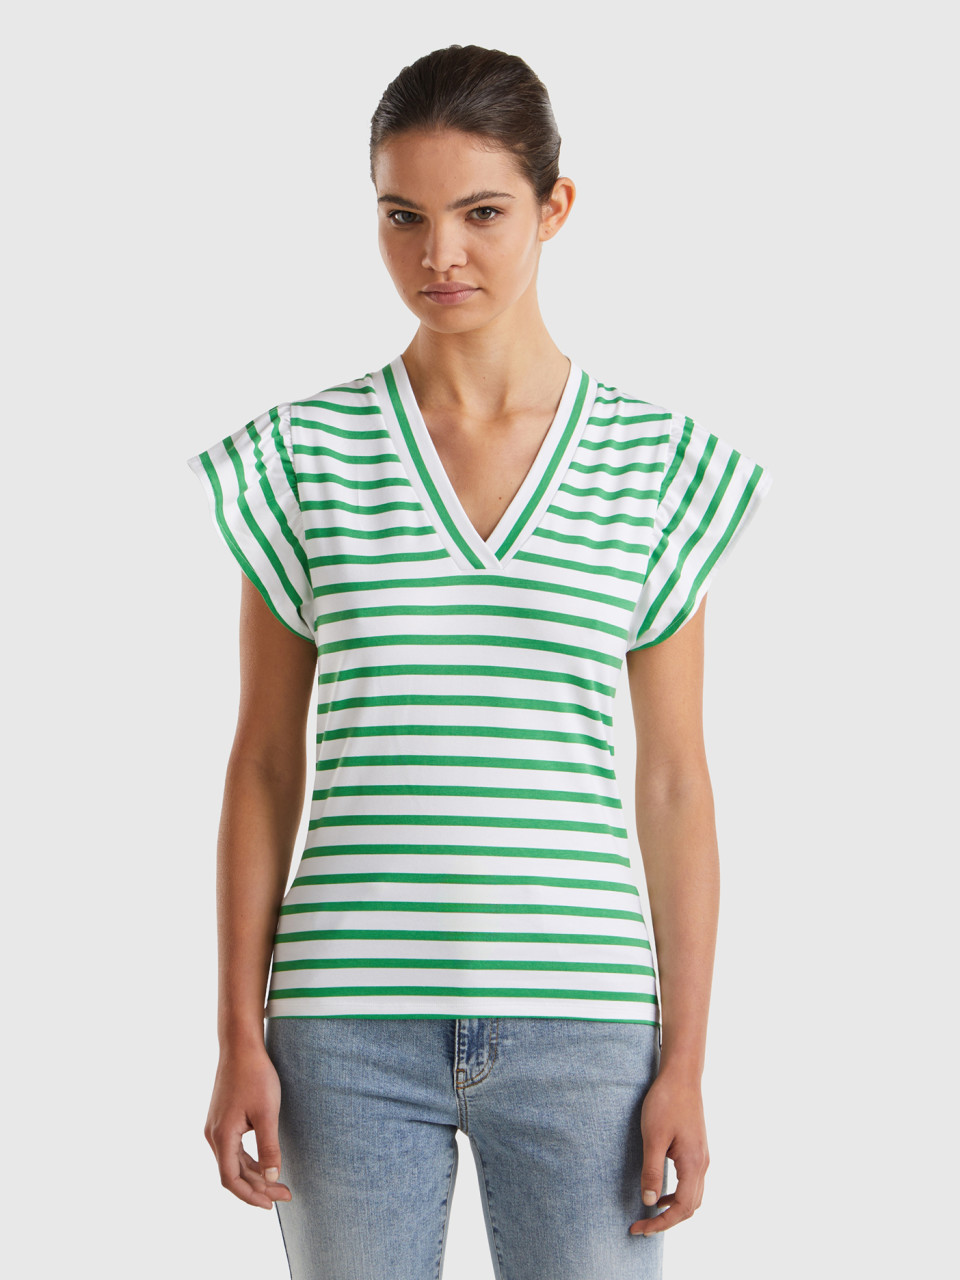 Benetton, T-shirt With Cap Sleeves, Green, Women